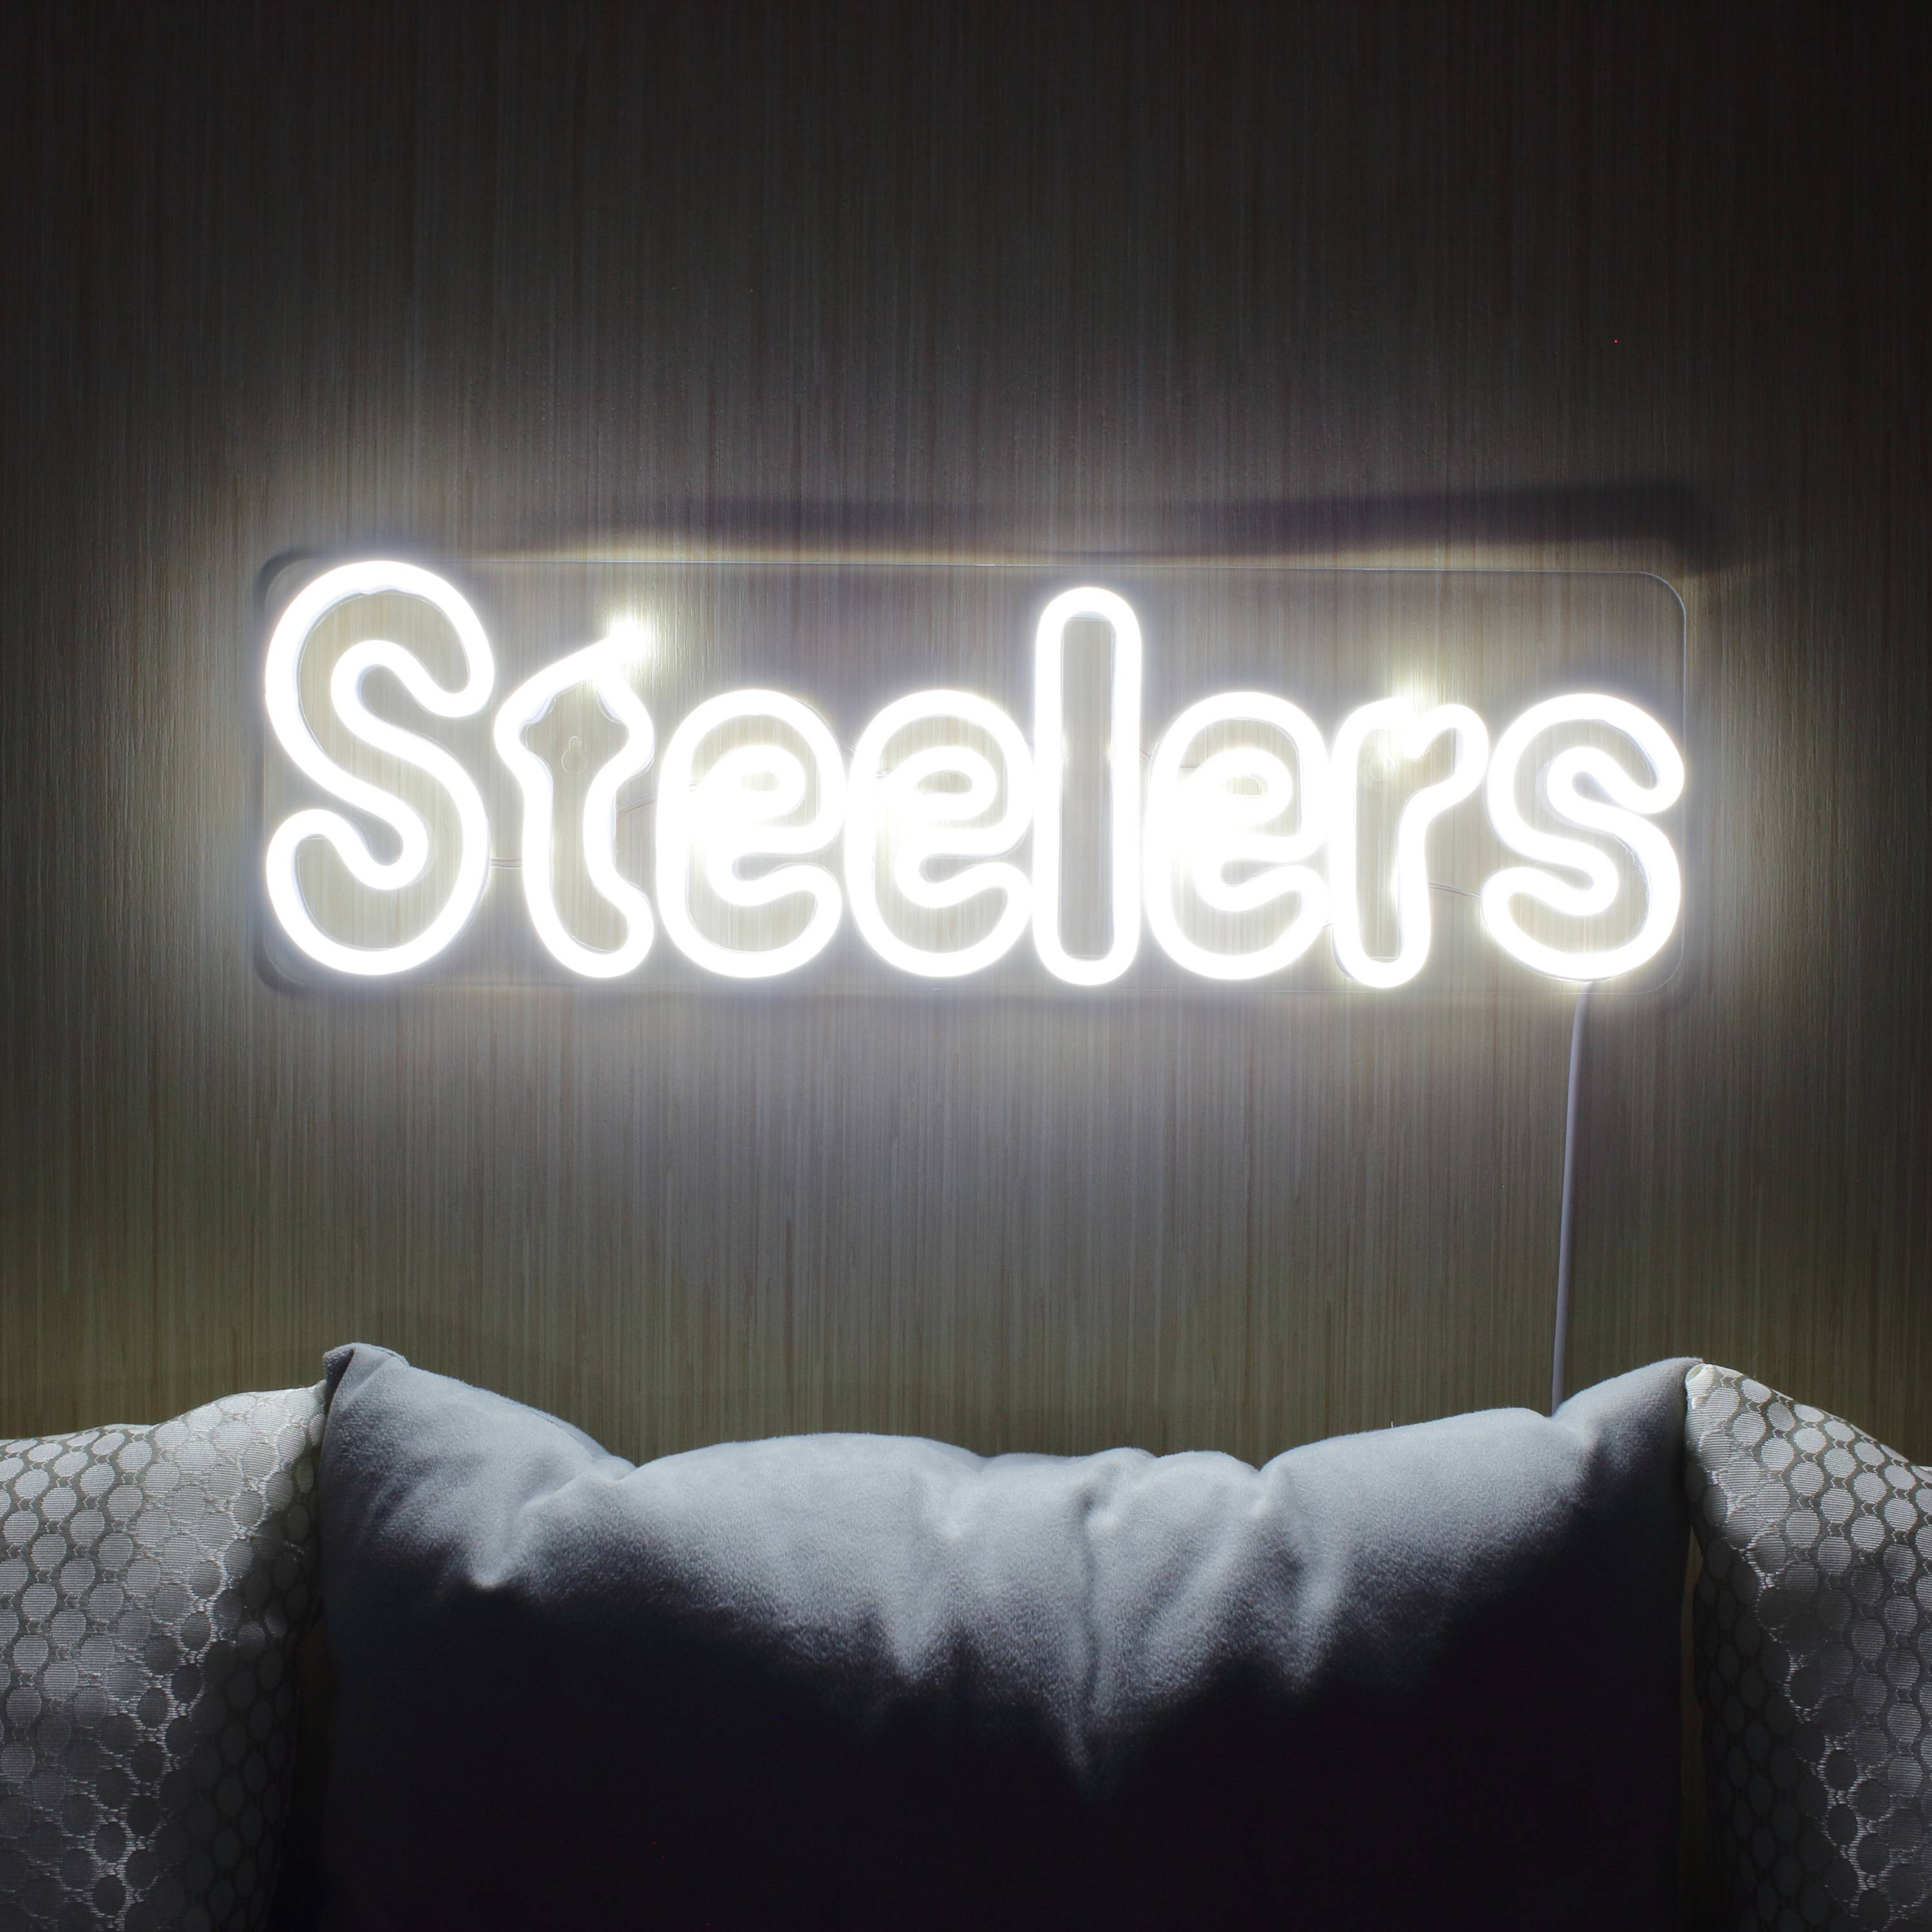 NFL STEELERS Large Flex Neon LED Sign